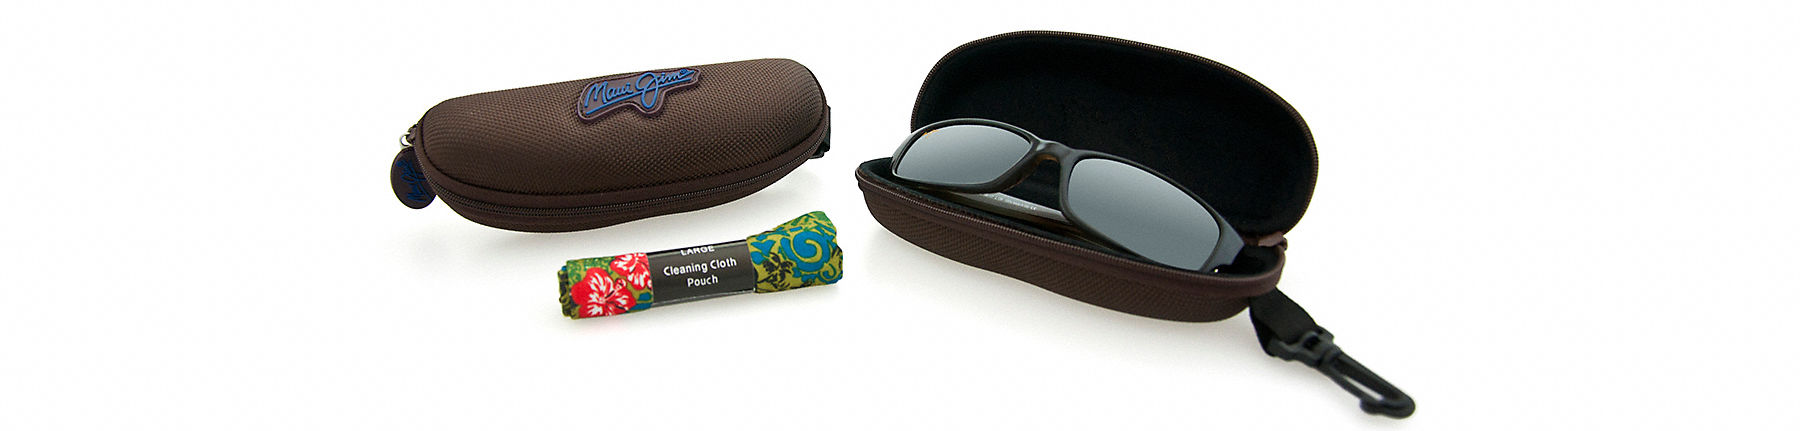 funda deportiva marrón abierta con gafas de sol en su interior, junto a una bolsa de gamuza